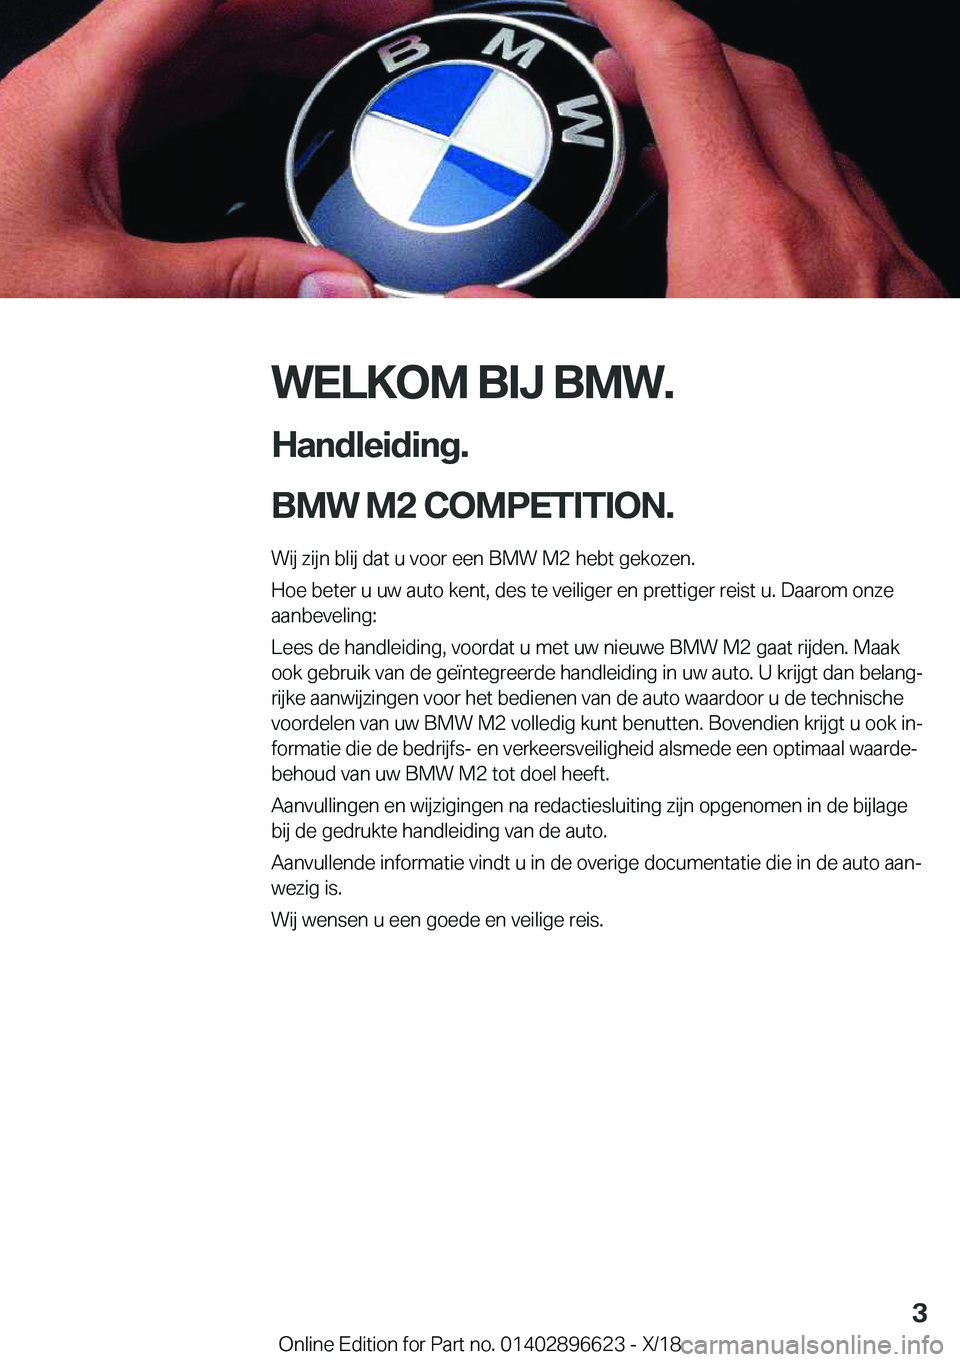 BMW M2 2019  Instructieboekjes (in Dutch) �W�E�L�K�O�M��B�I�J��B�M�W�.
�H�a�n�d�l�e�i�d�i�n�g�.
�B�M�W��M�2��C�O�M�P�E�T�I�T�I�O�N�.� �W�i�j��z�i�j�n��b�l�i�j��d�a�t��u��v�o�o�r��e�e�n��B�M�W��M�2��h�e�b�t��g�e�k�o�z�e�n�.
�H�o